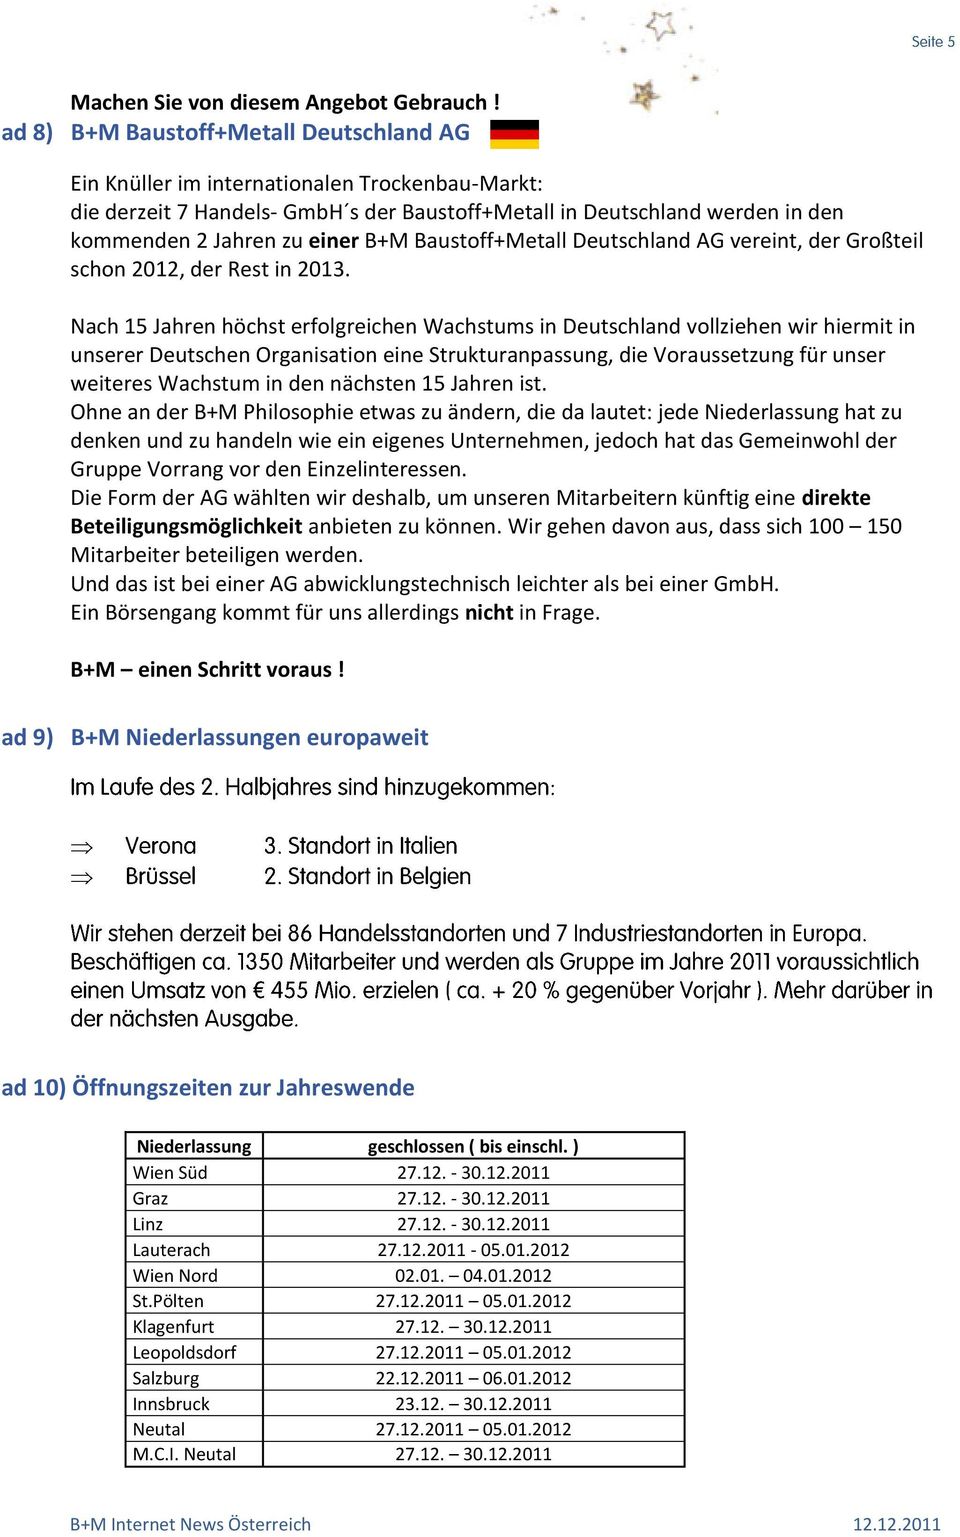 B+M Baustoff+Metall Deutschland AG vereint, der Großteil schon 2012, der Rest in 2013.